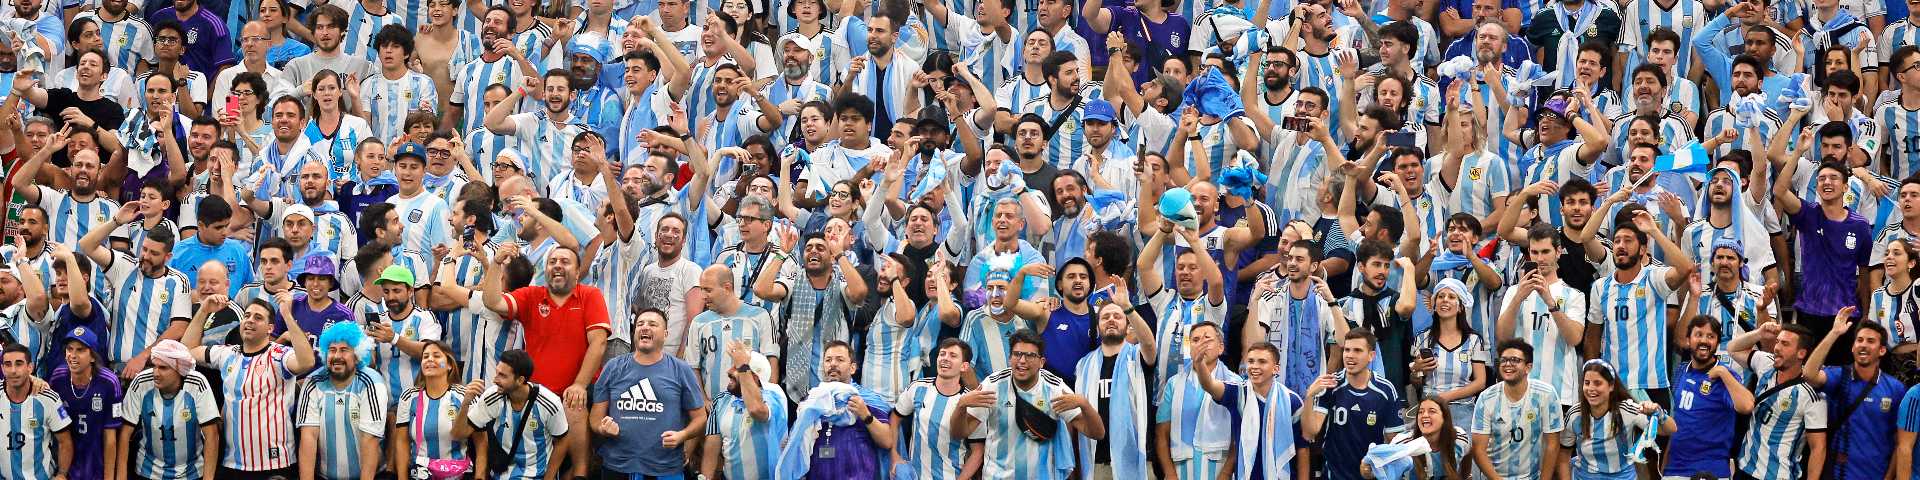 Како је фудбал дошао у Аргентину и створио Аргентинце: Лоптање као темељ националног идентитета